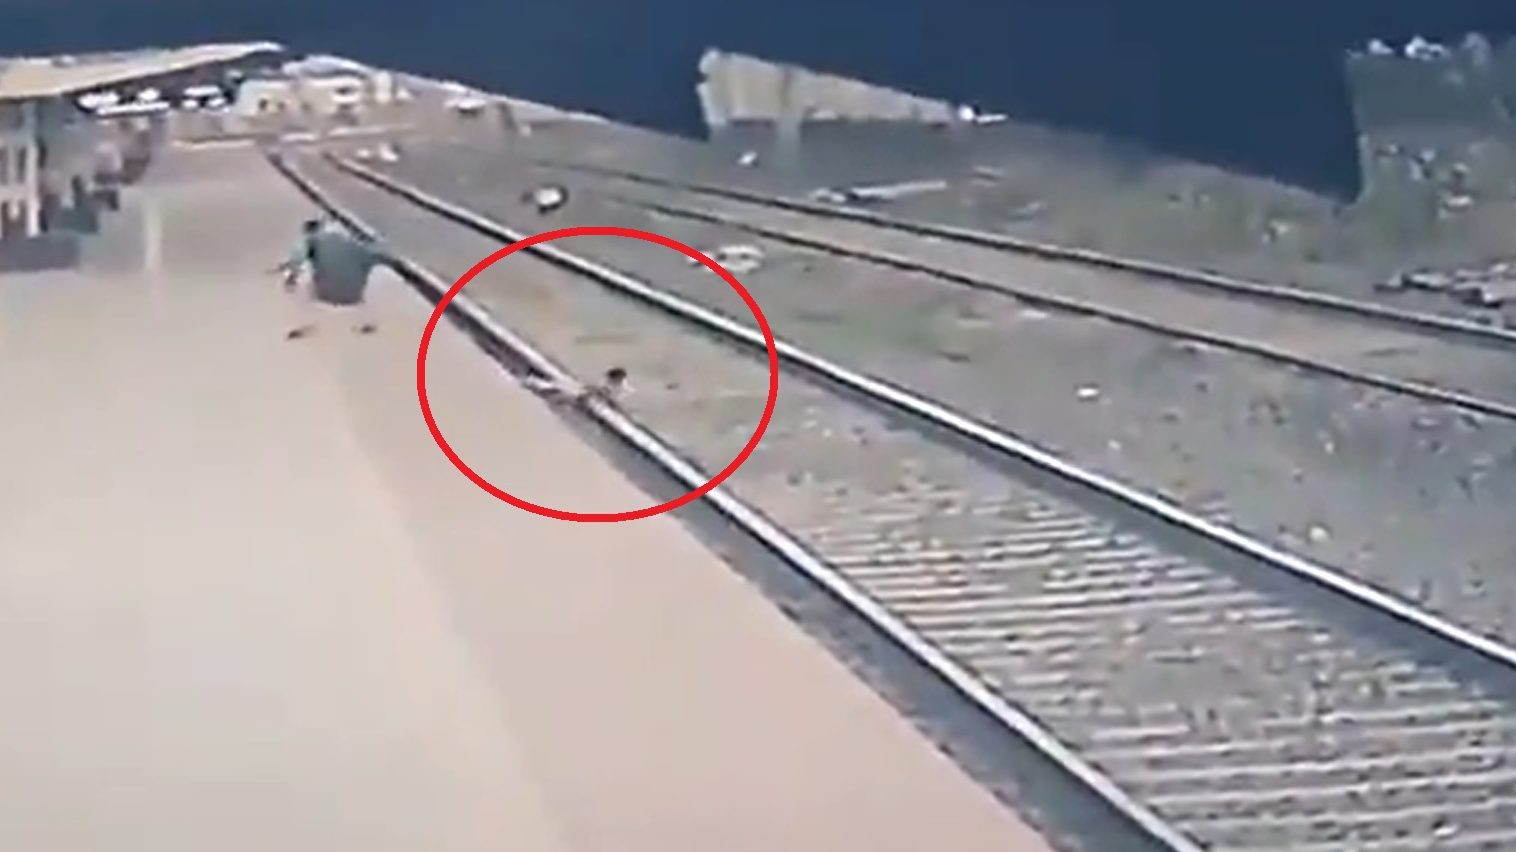 Az utolsó pillanatban mentette meg a vasutas a sínekre zuhant hatéves életét